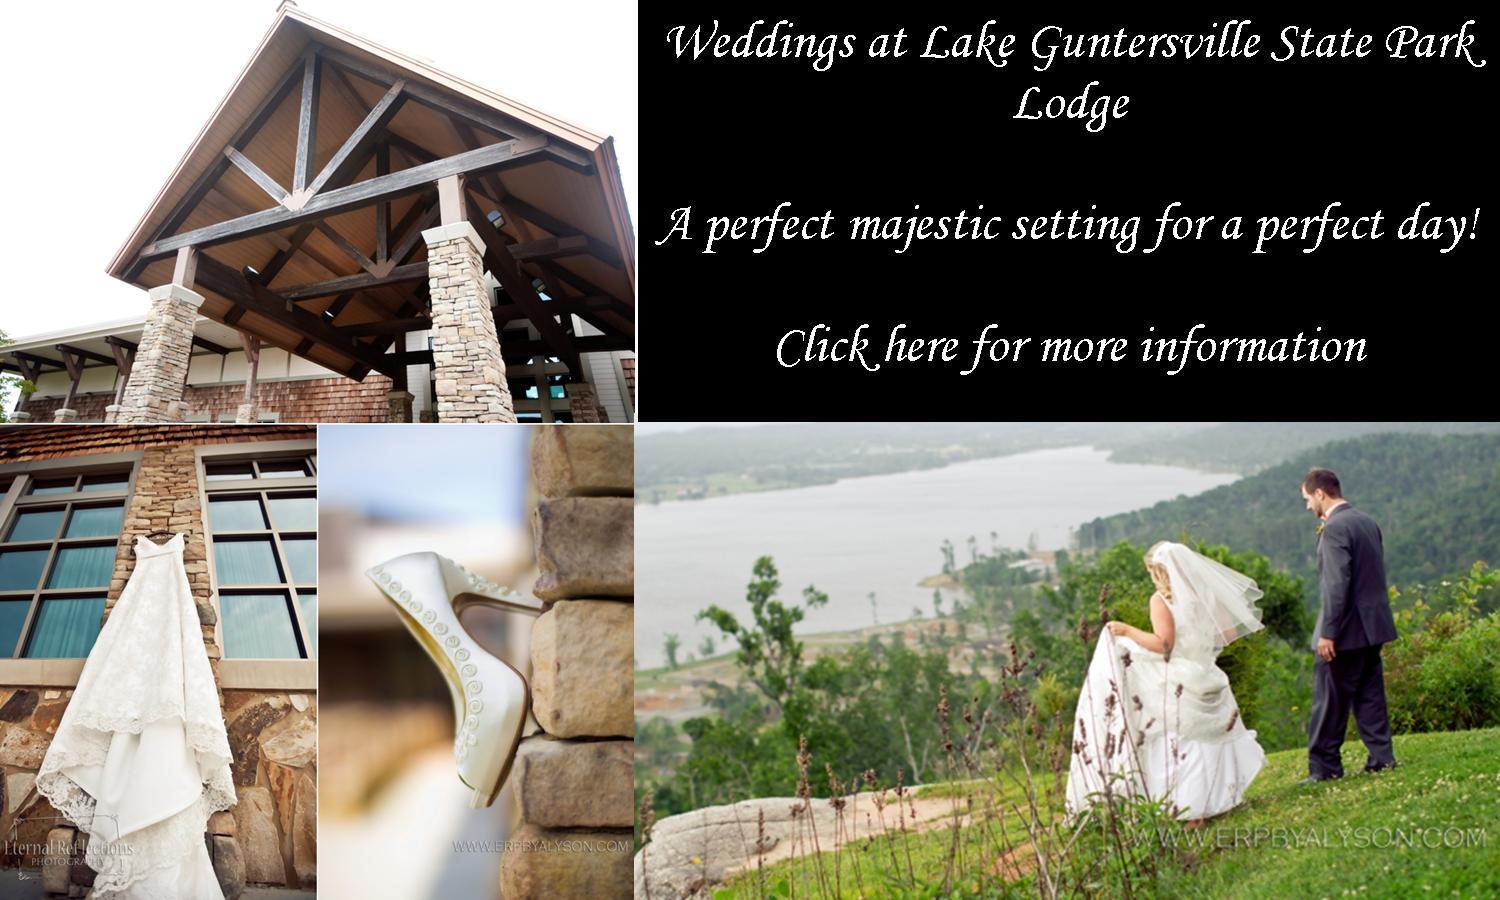 Lake Guntersville State Park Weddings